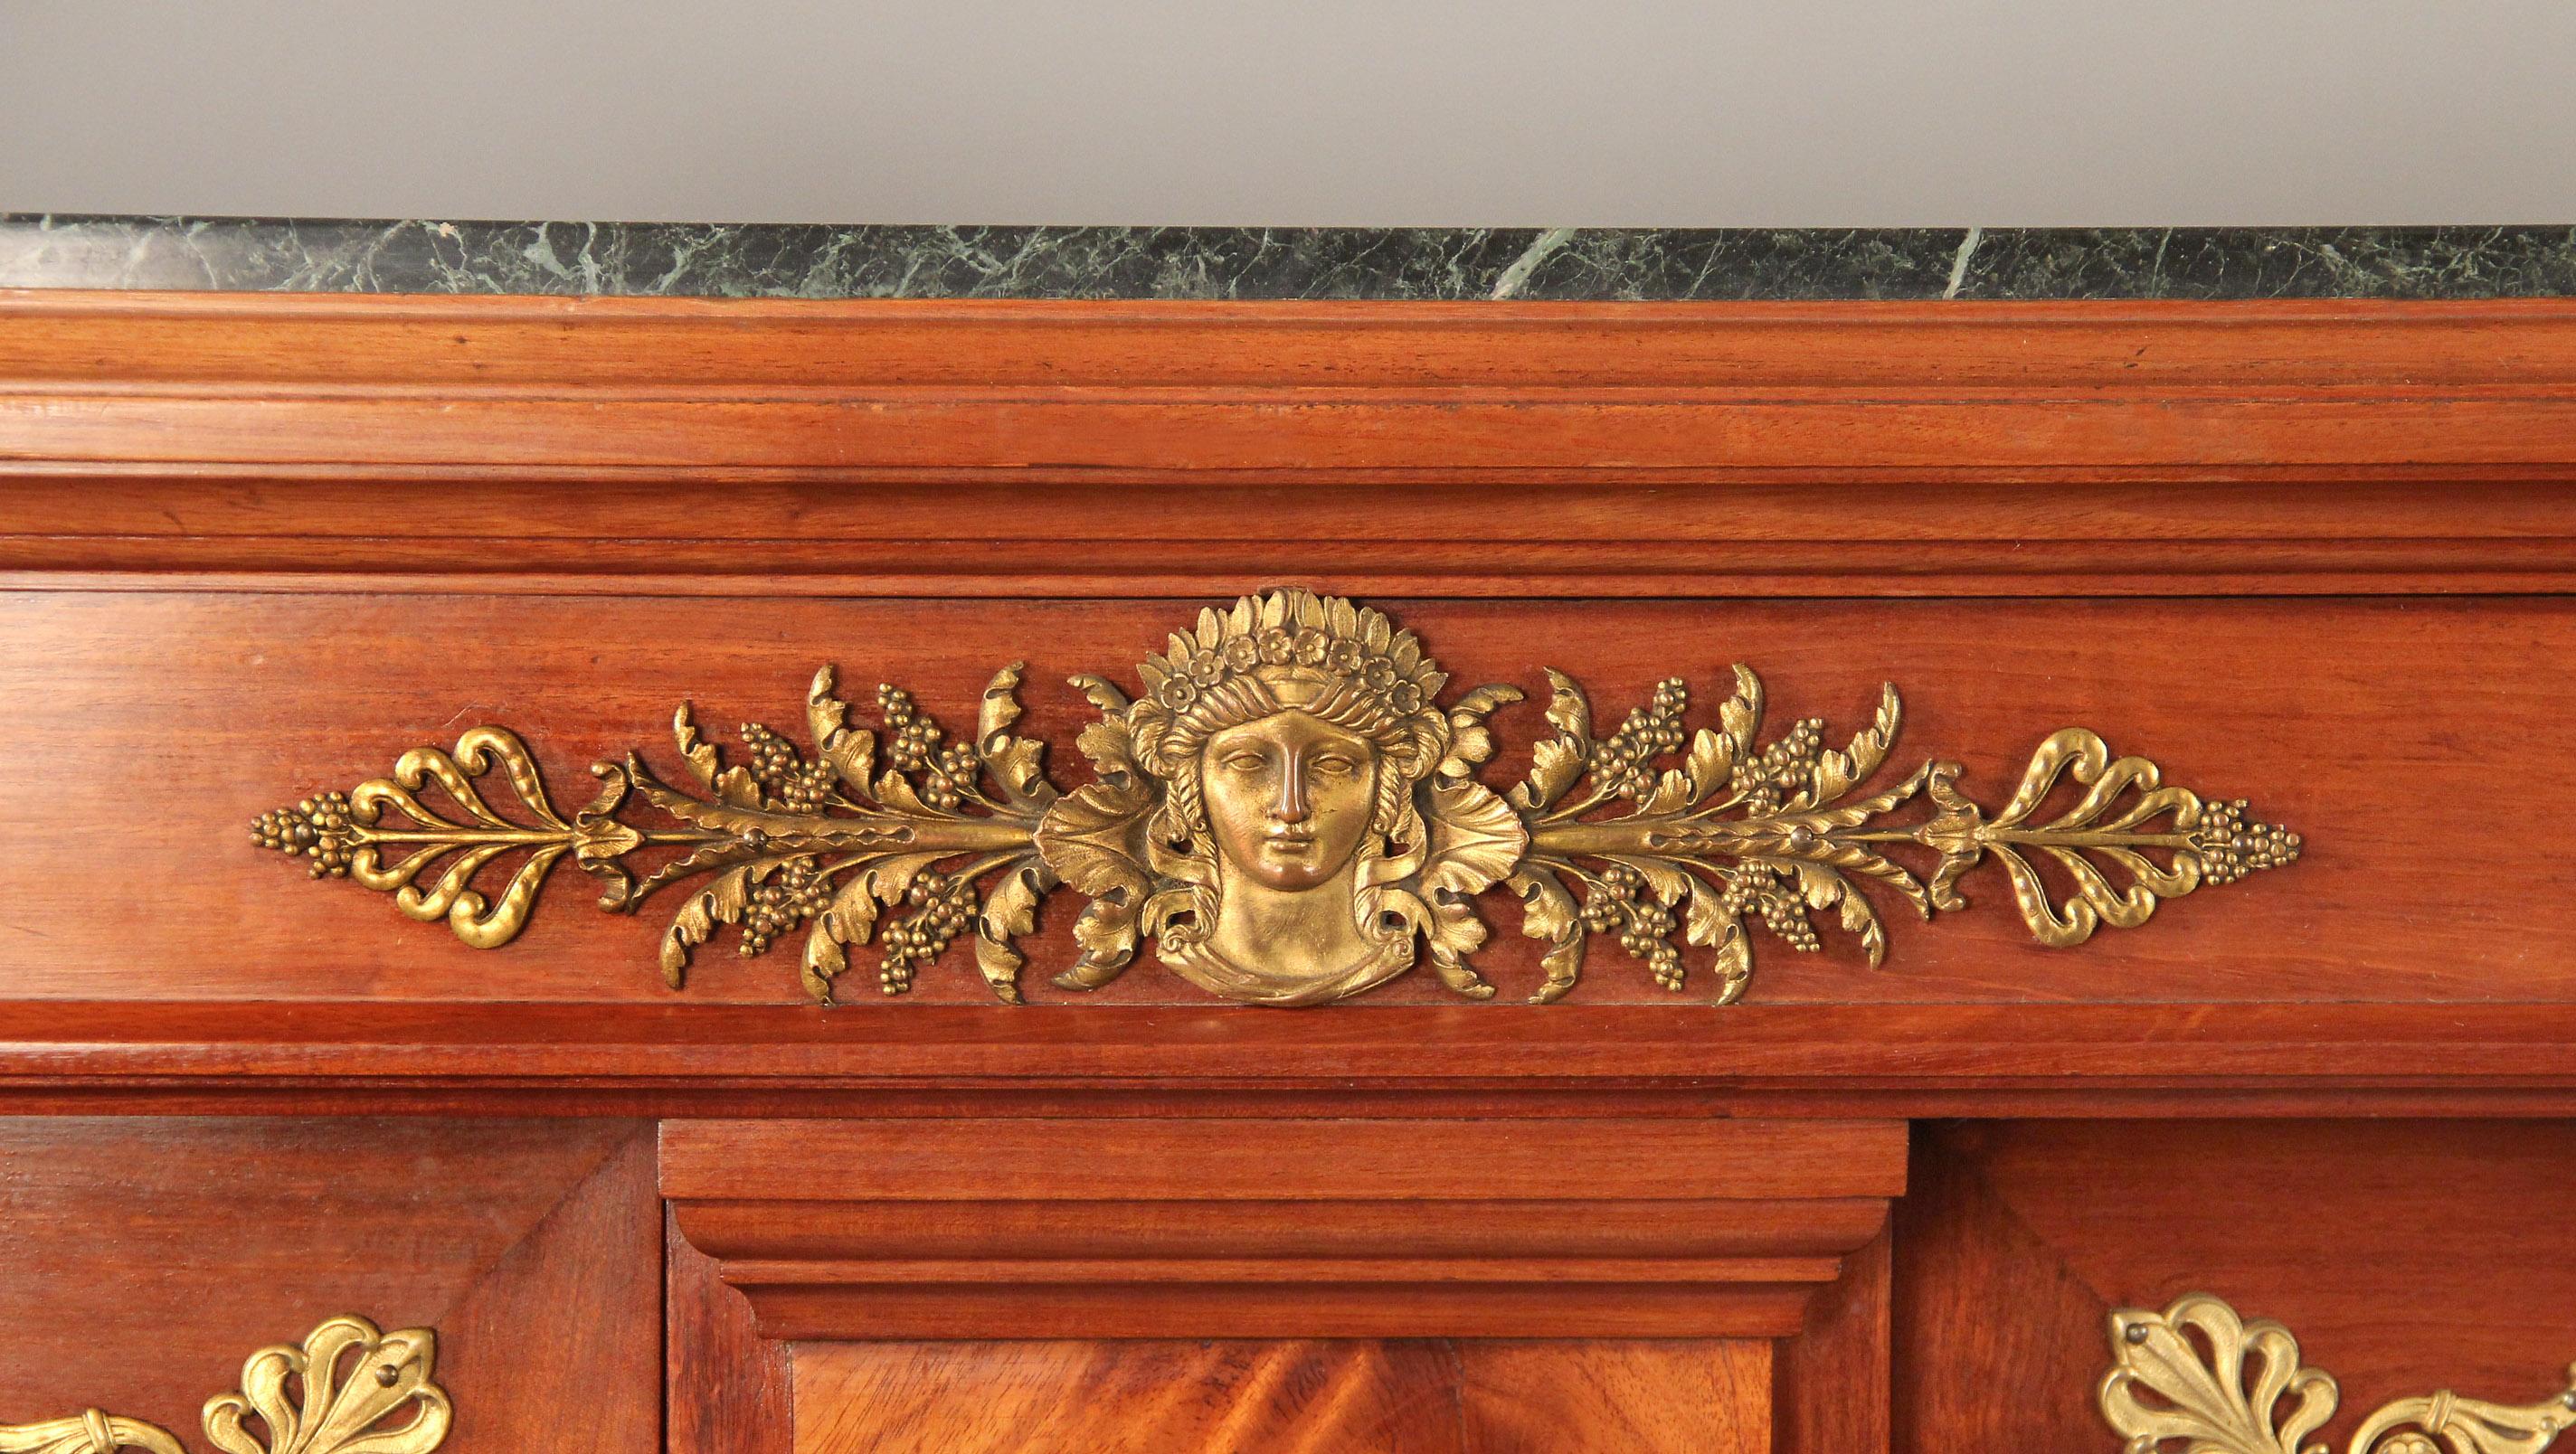 Intéressant cabinet de style Empire monté en bronze doré de la fin du XIXe siècle

Le plateau en marbre de sinople surmonte deux grandes portes ornées d'anges, le centre du plateau est décoré d'une jeune fille et les côtés de têtes de femmes. Le